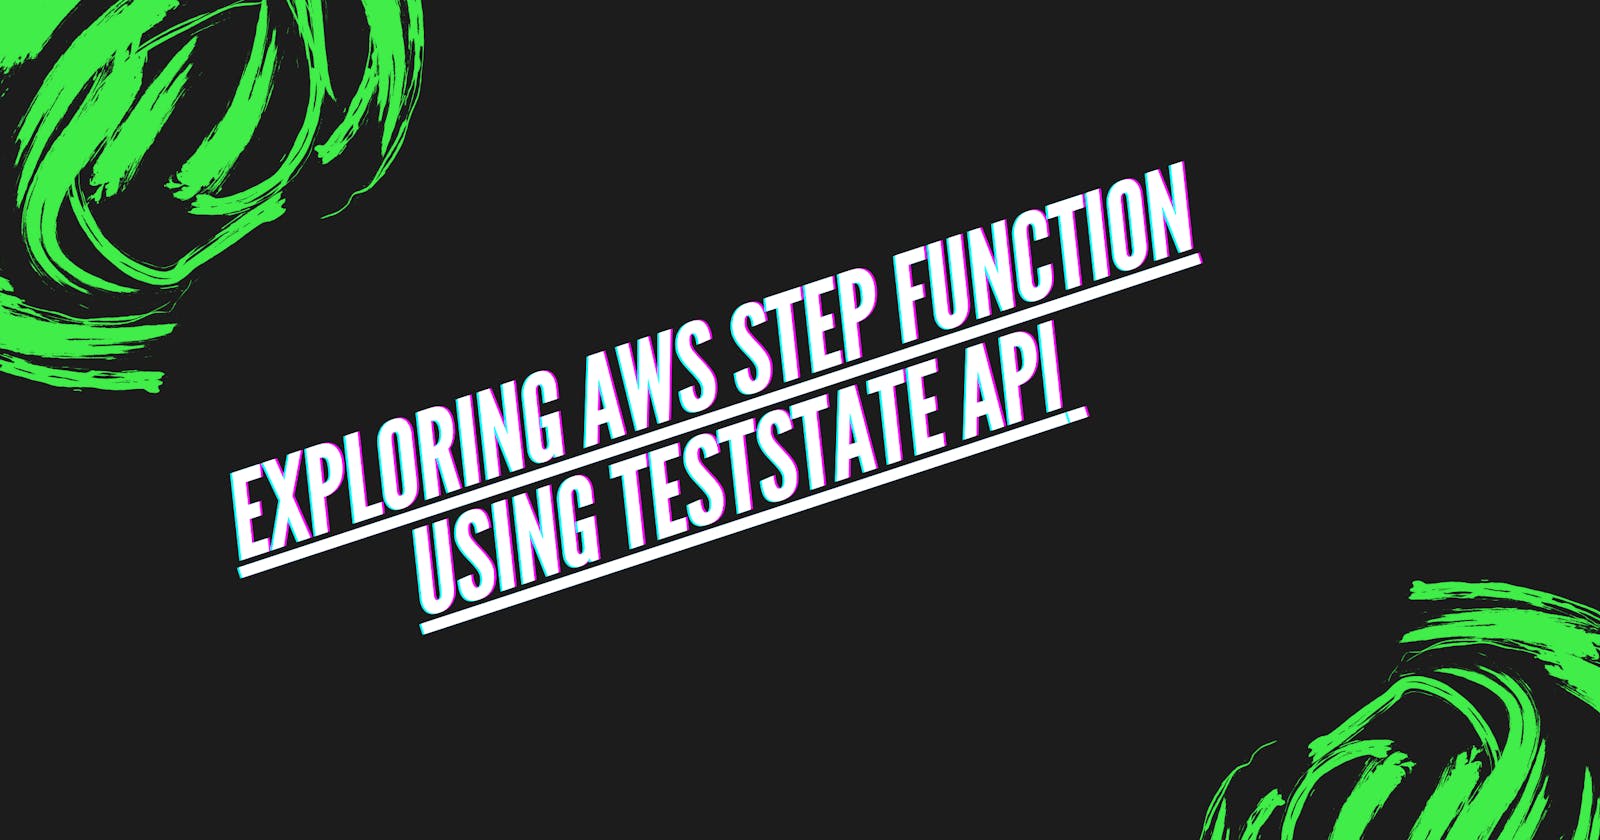 Exploring AWS Step Function Using TestState API